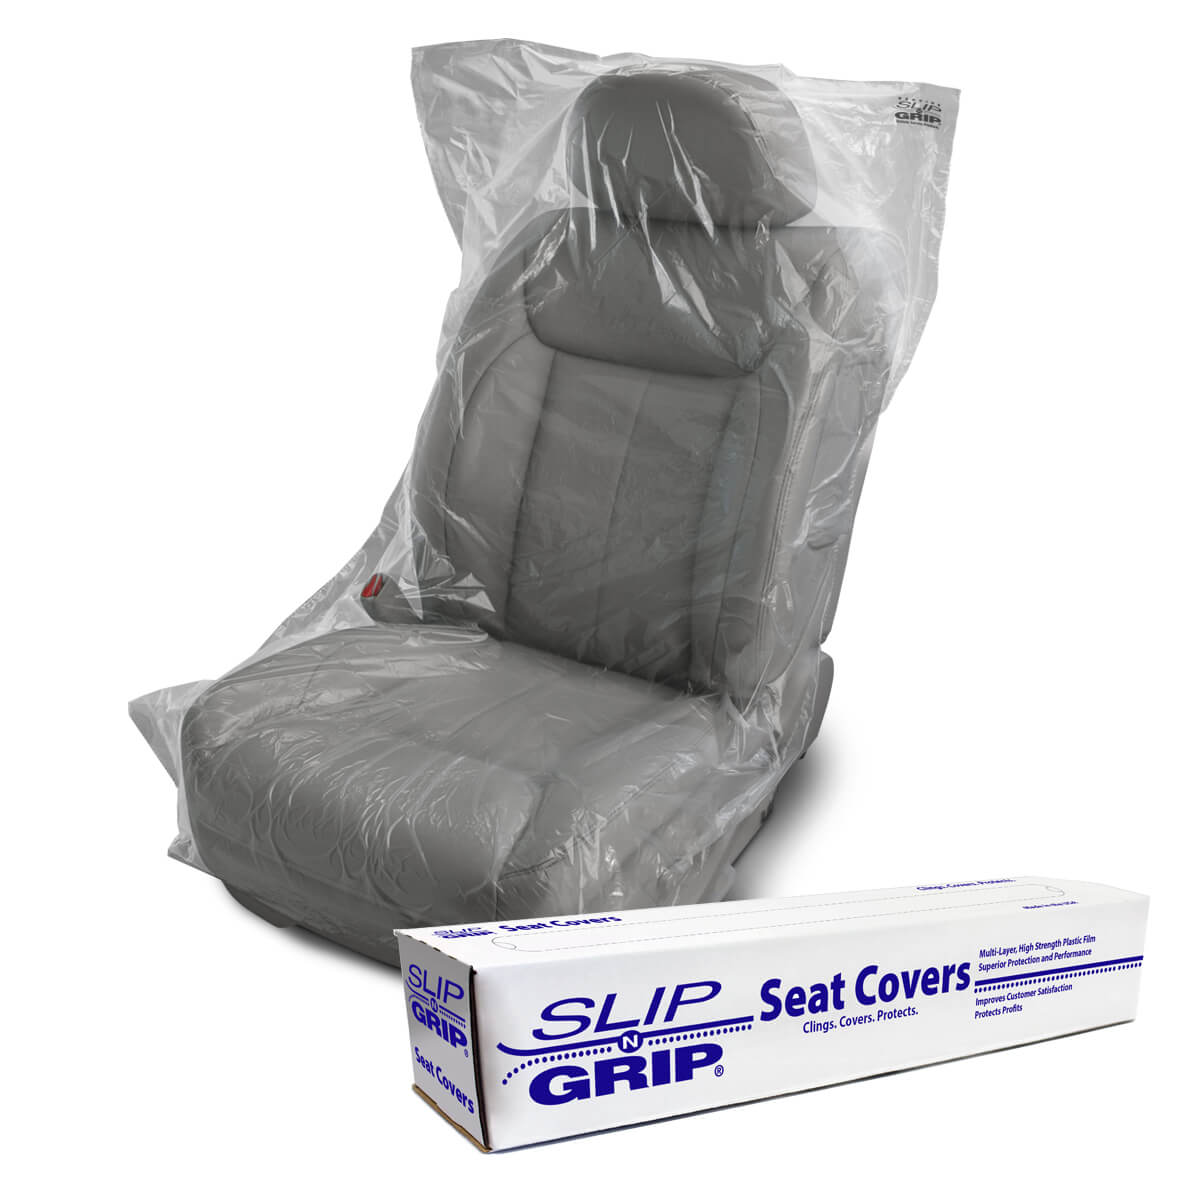 Premium Seat Cover - 250 / Roll